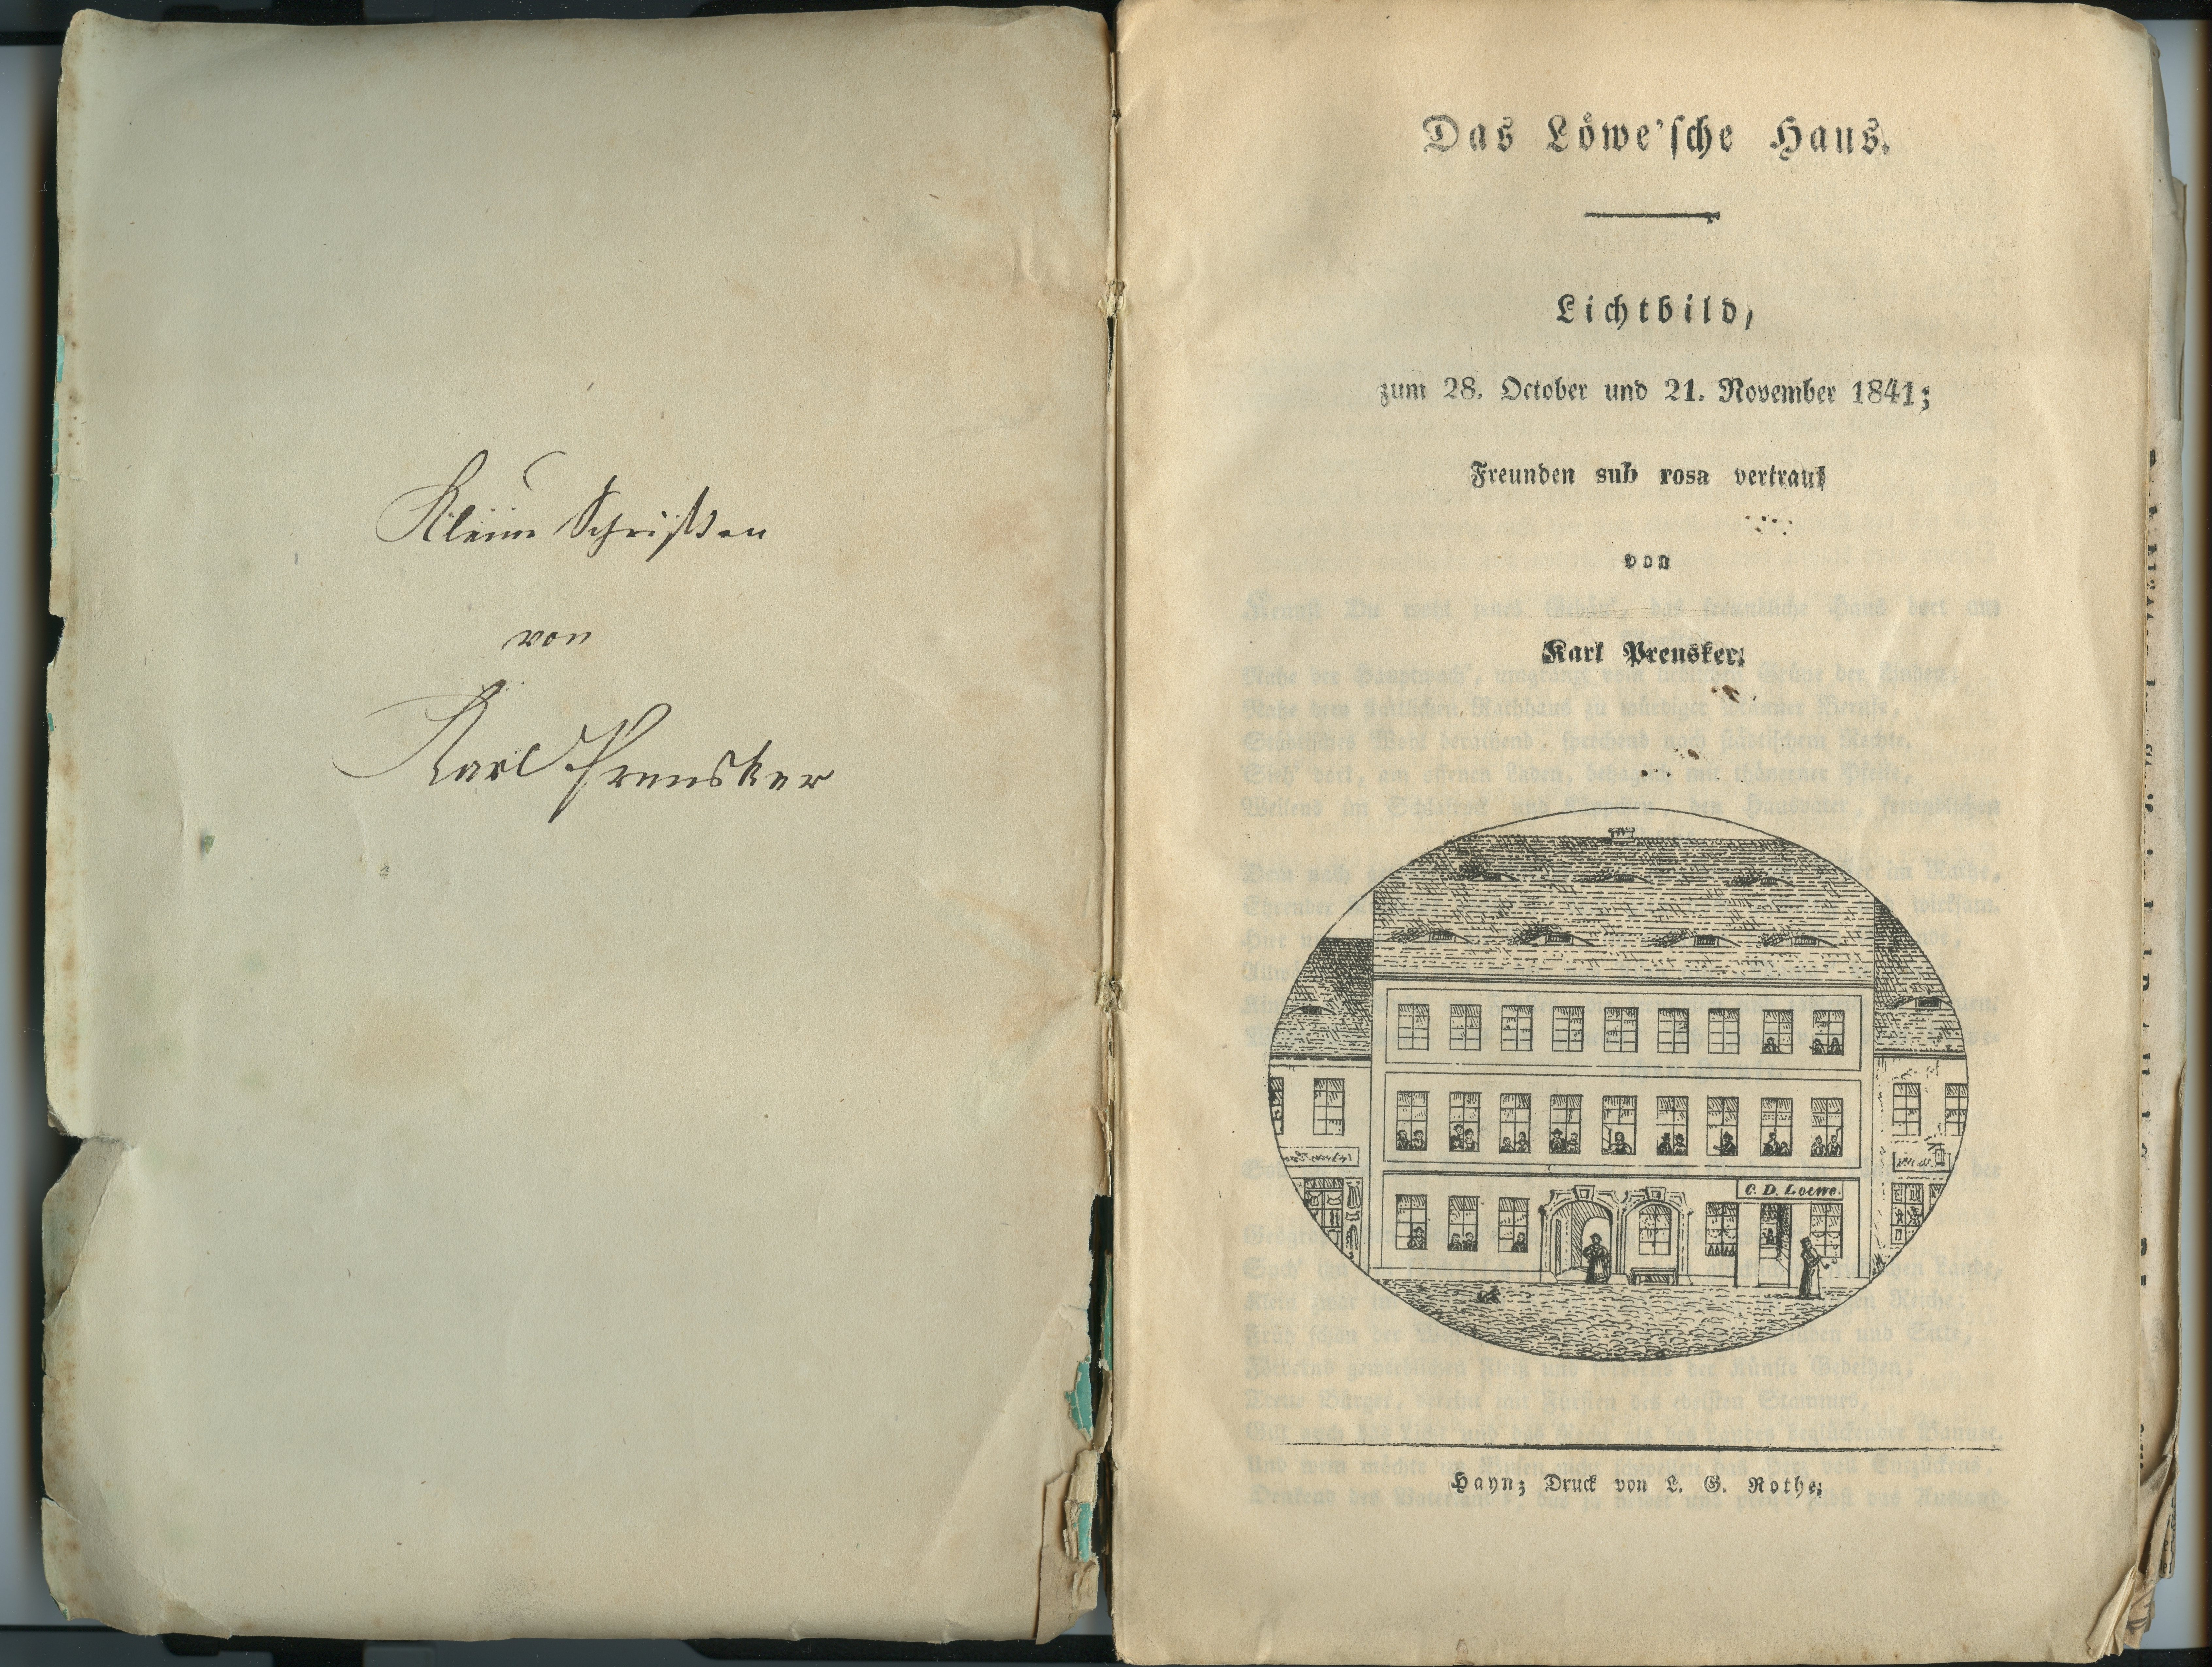 Preusker, Karl: Das Löwe'sche Haus, 1841, sowie weitere eingebundene bzw. beigelegte Drucke und Handschriften (Museum Alte Lateinschule CC BY-NC-SA)